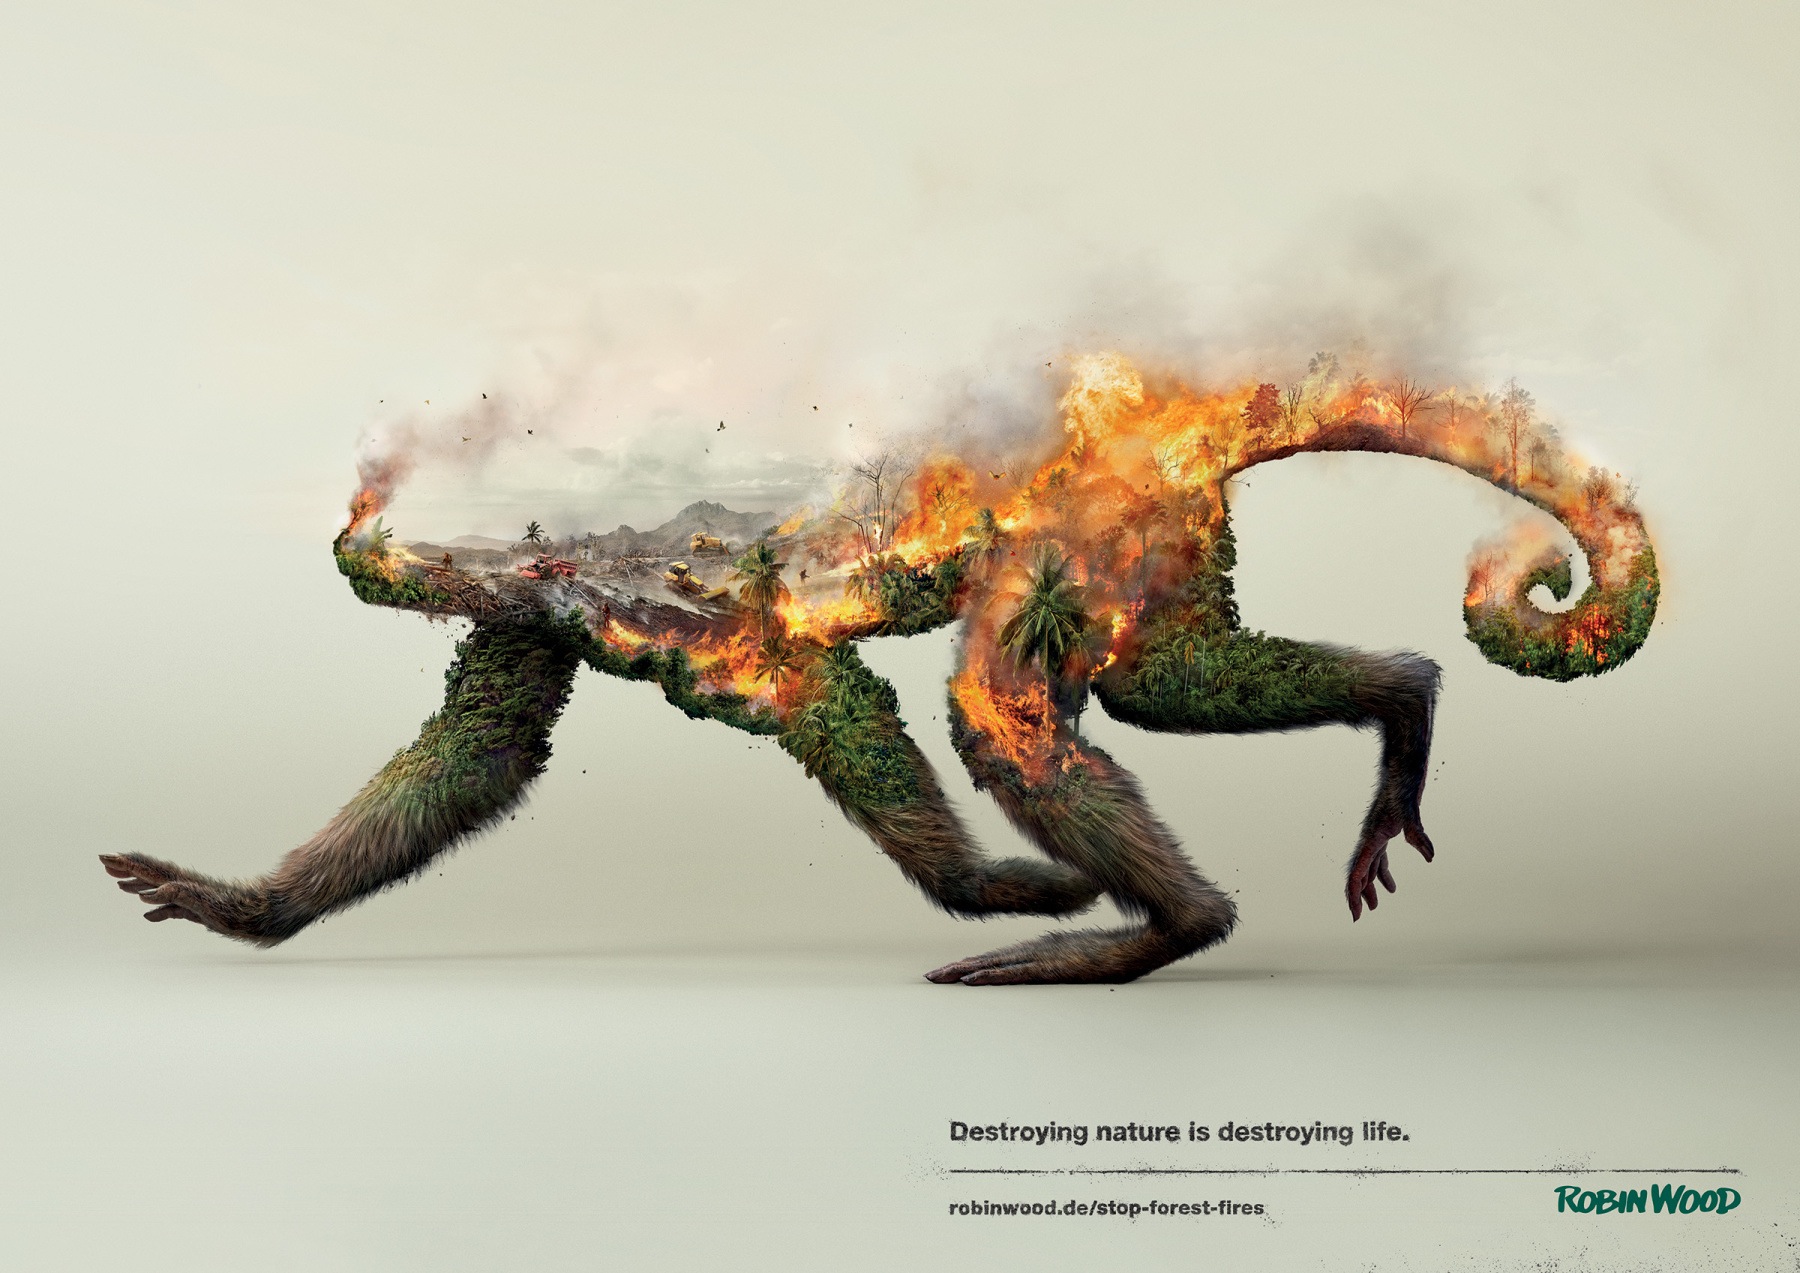 “Doğayı yok etmek, Hayatı yok etmektir” sloganı ile çarpıcı sanatsal görüntüler